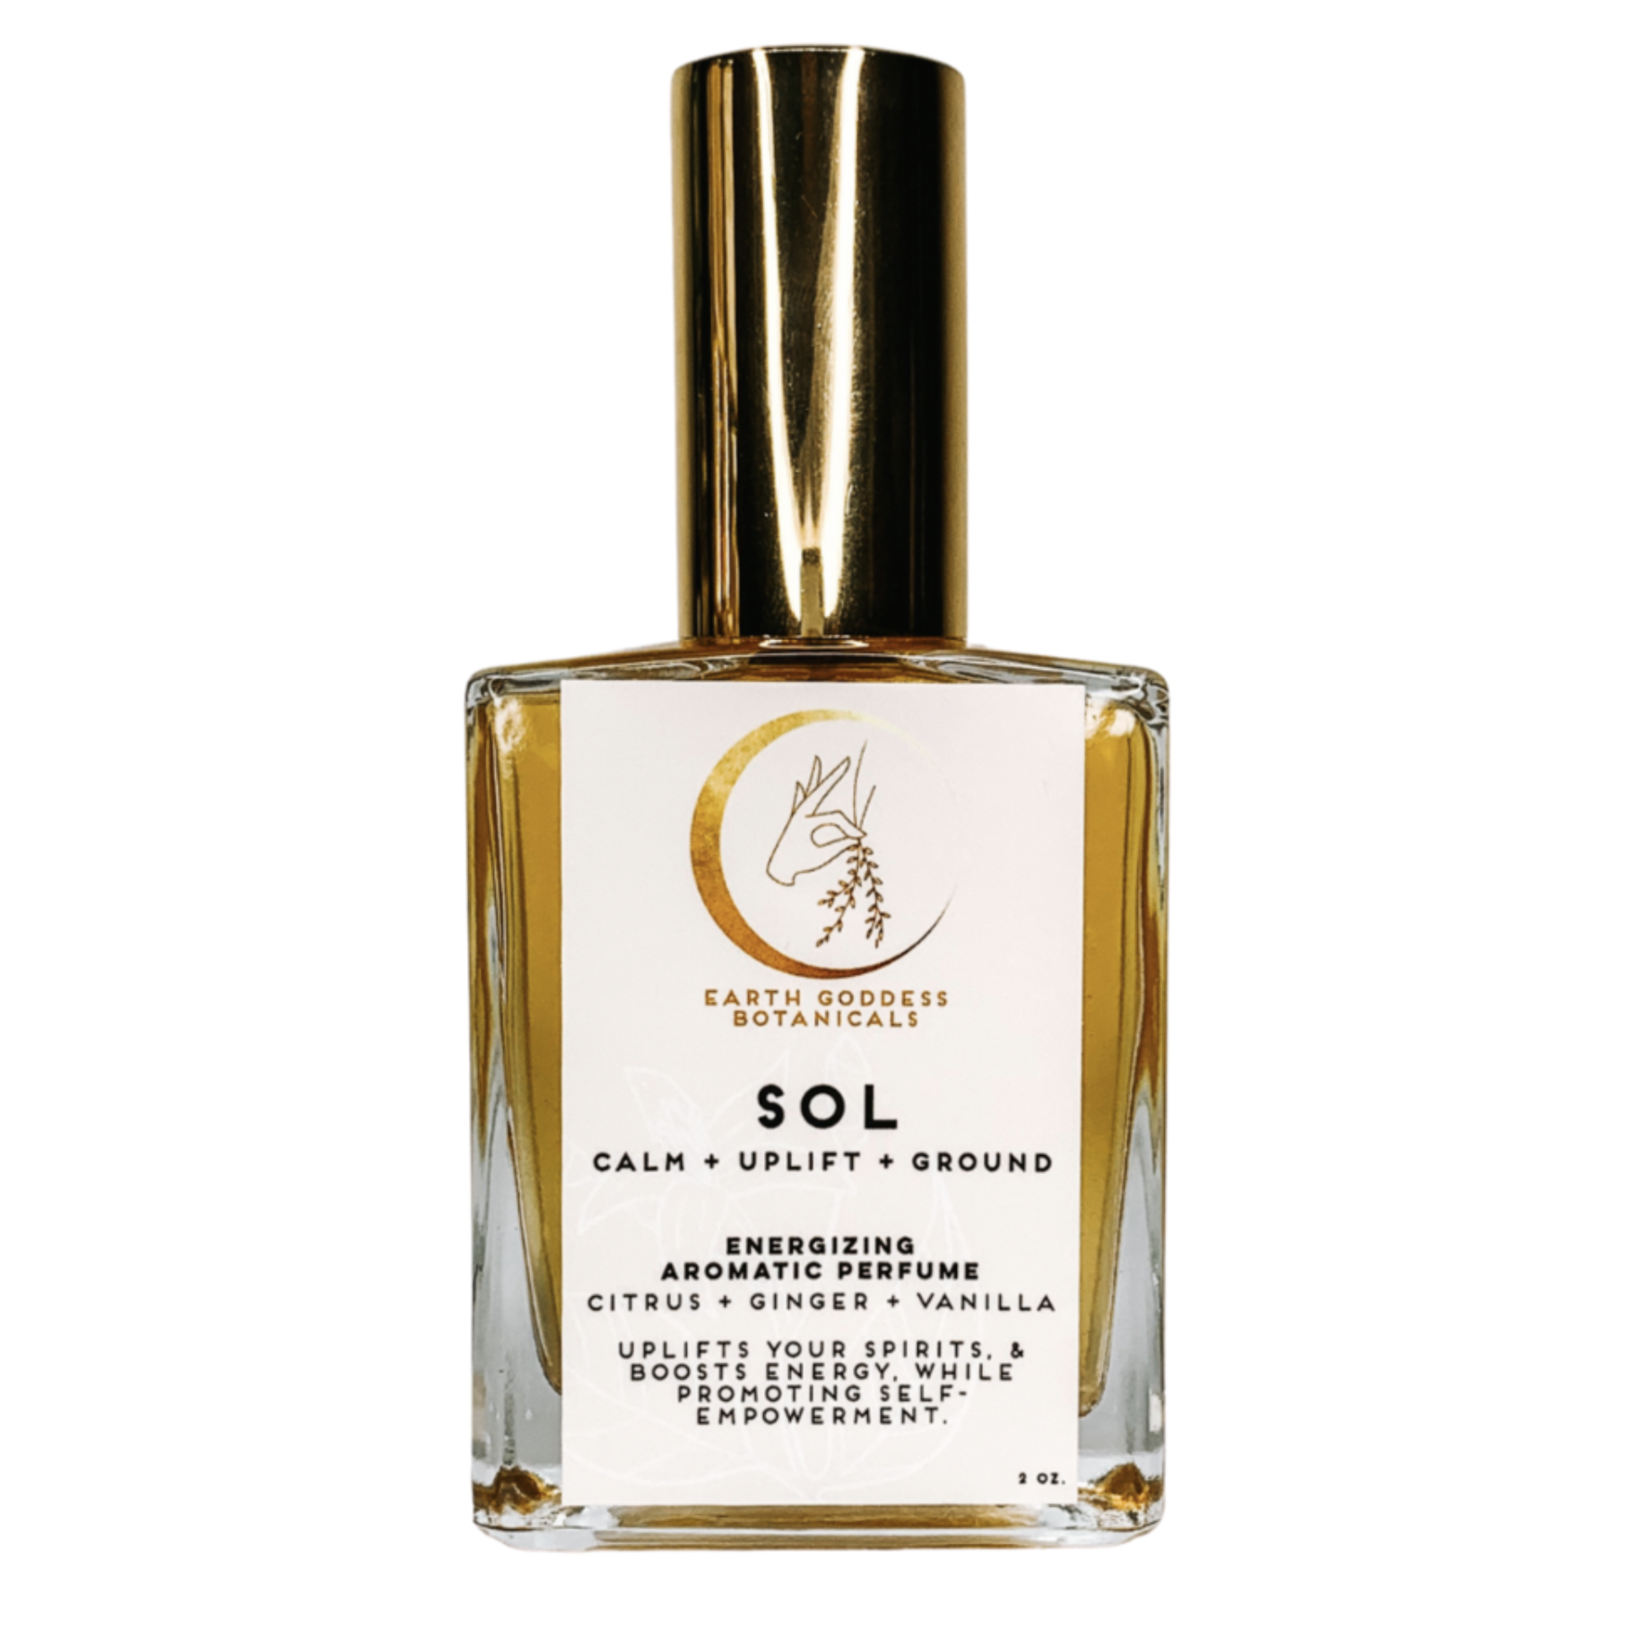 Sol Plant-Based Perfume